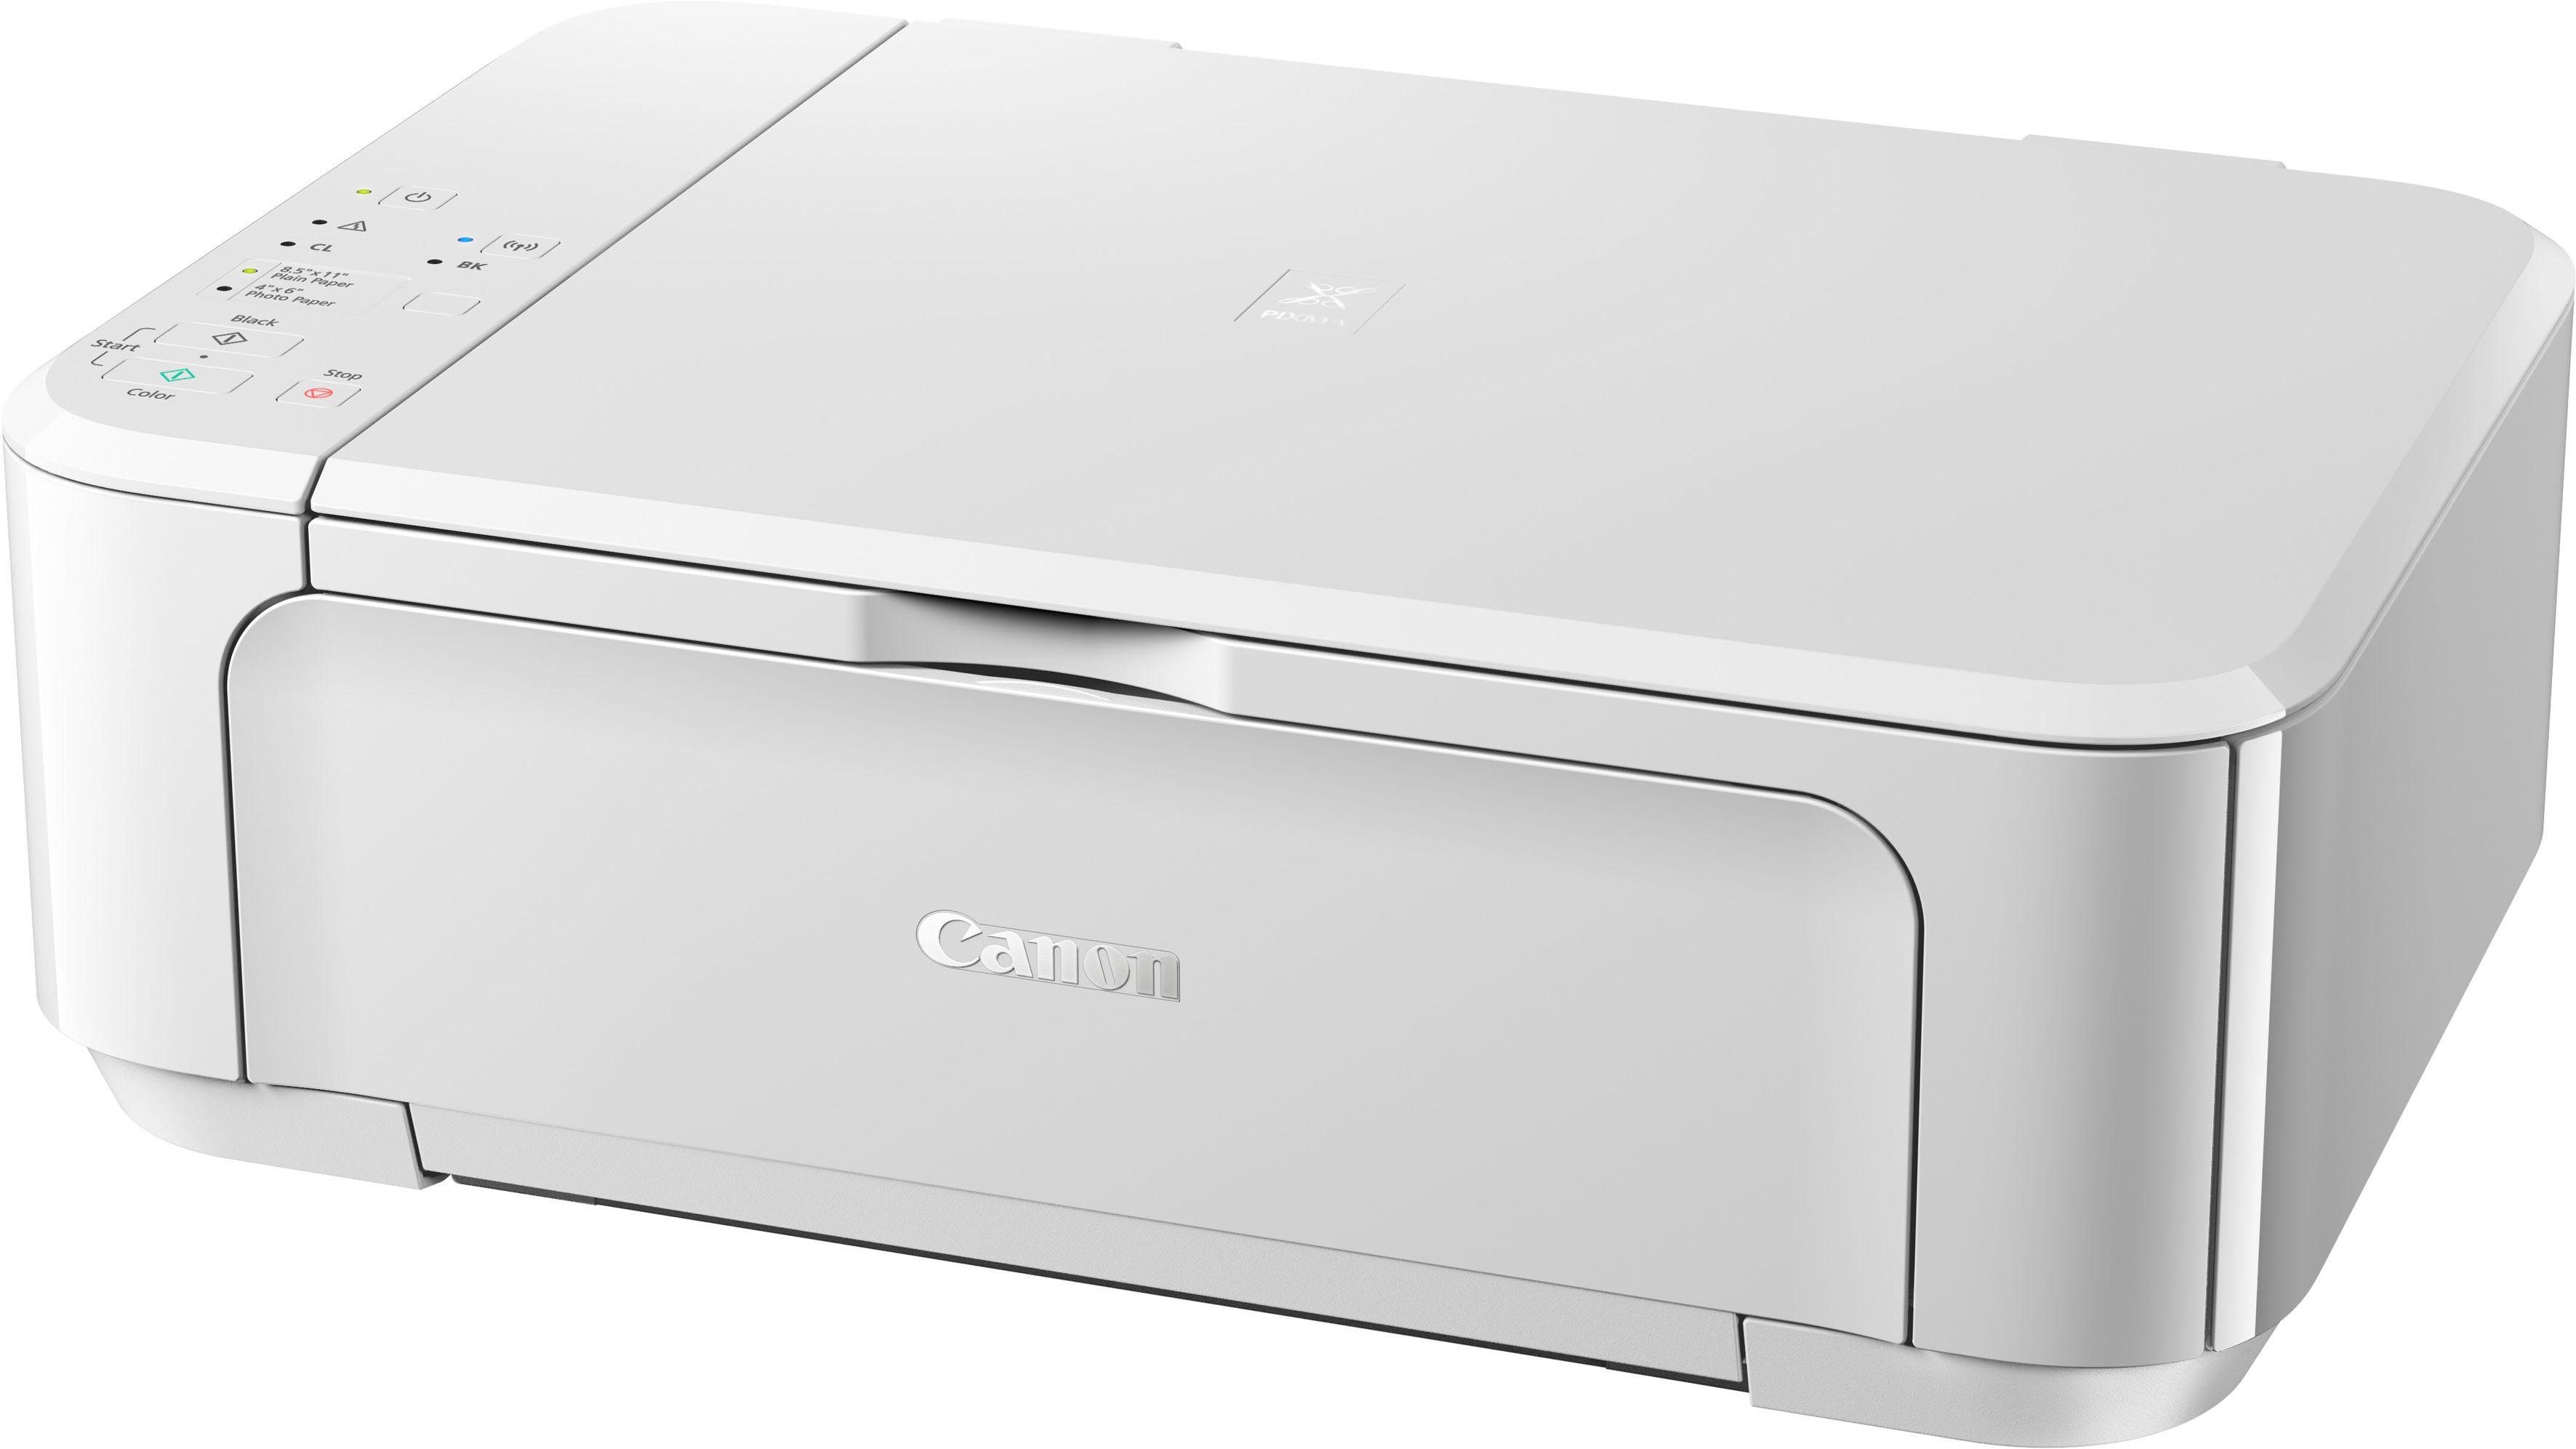 Multifunktionsdrucker, Canon (WLAN weiß (Wi-Fi) PIXMA MG3650S